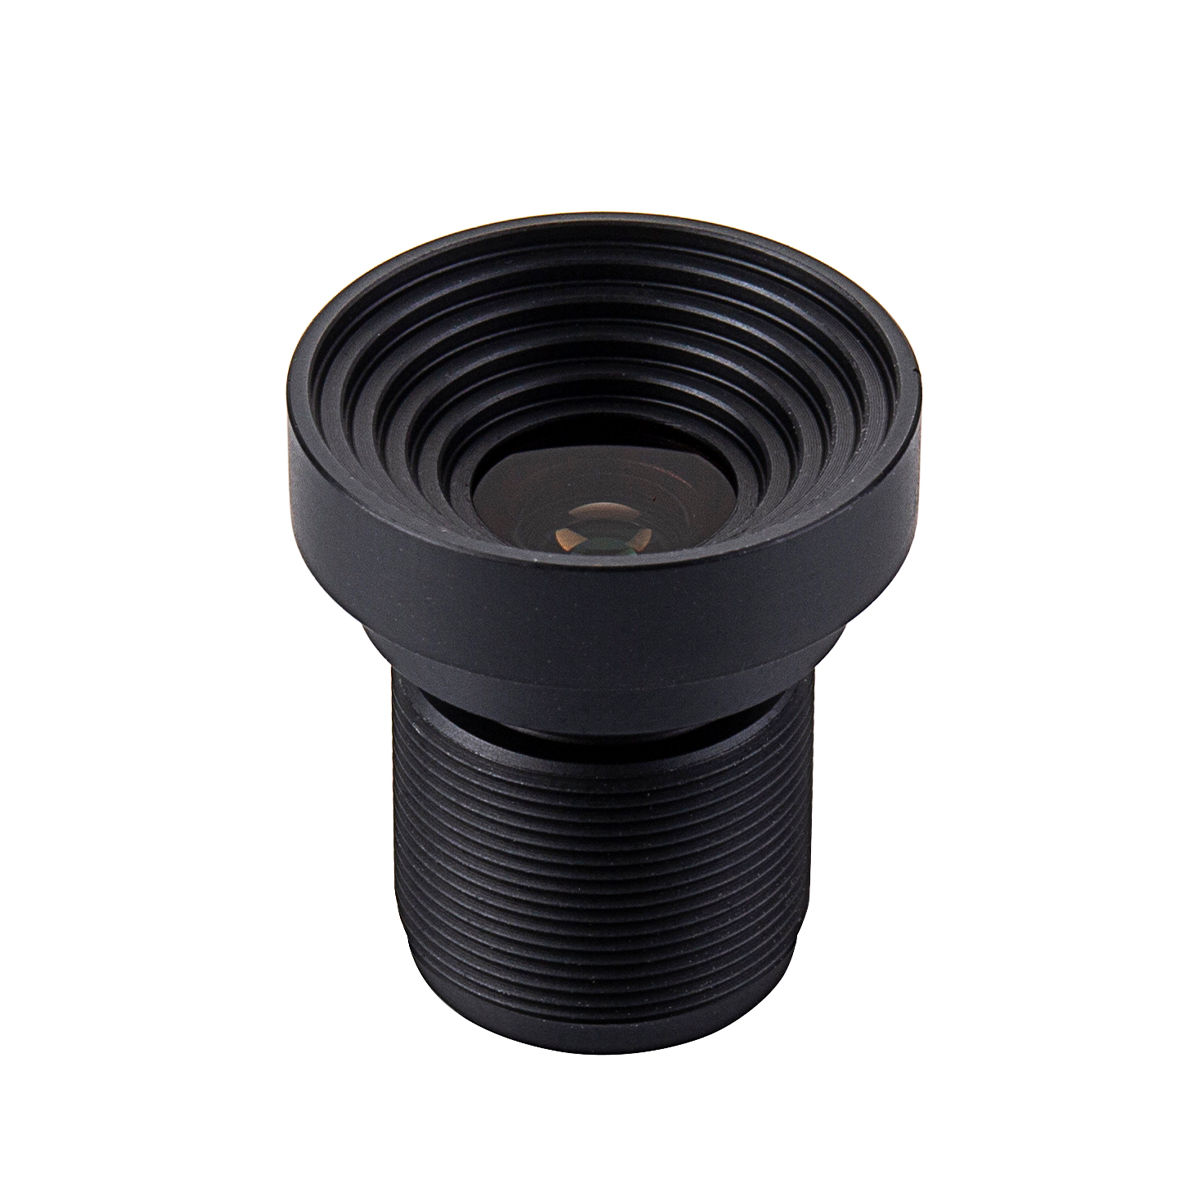 One of Hottest for Lens For Scanner -
 UVA Lenses – ChuangAn